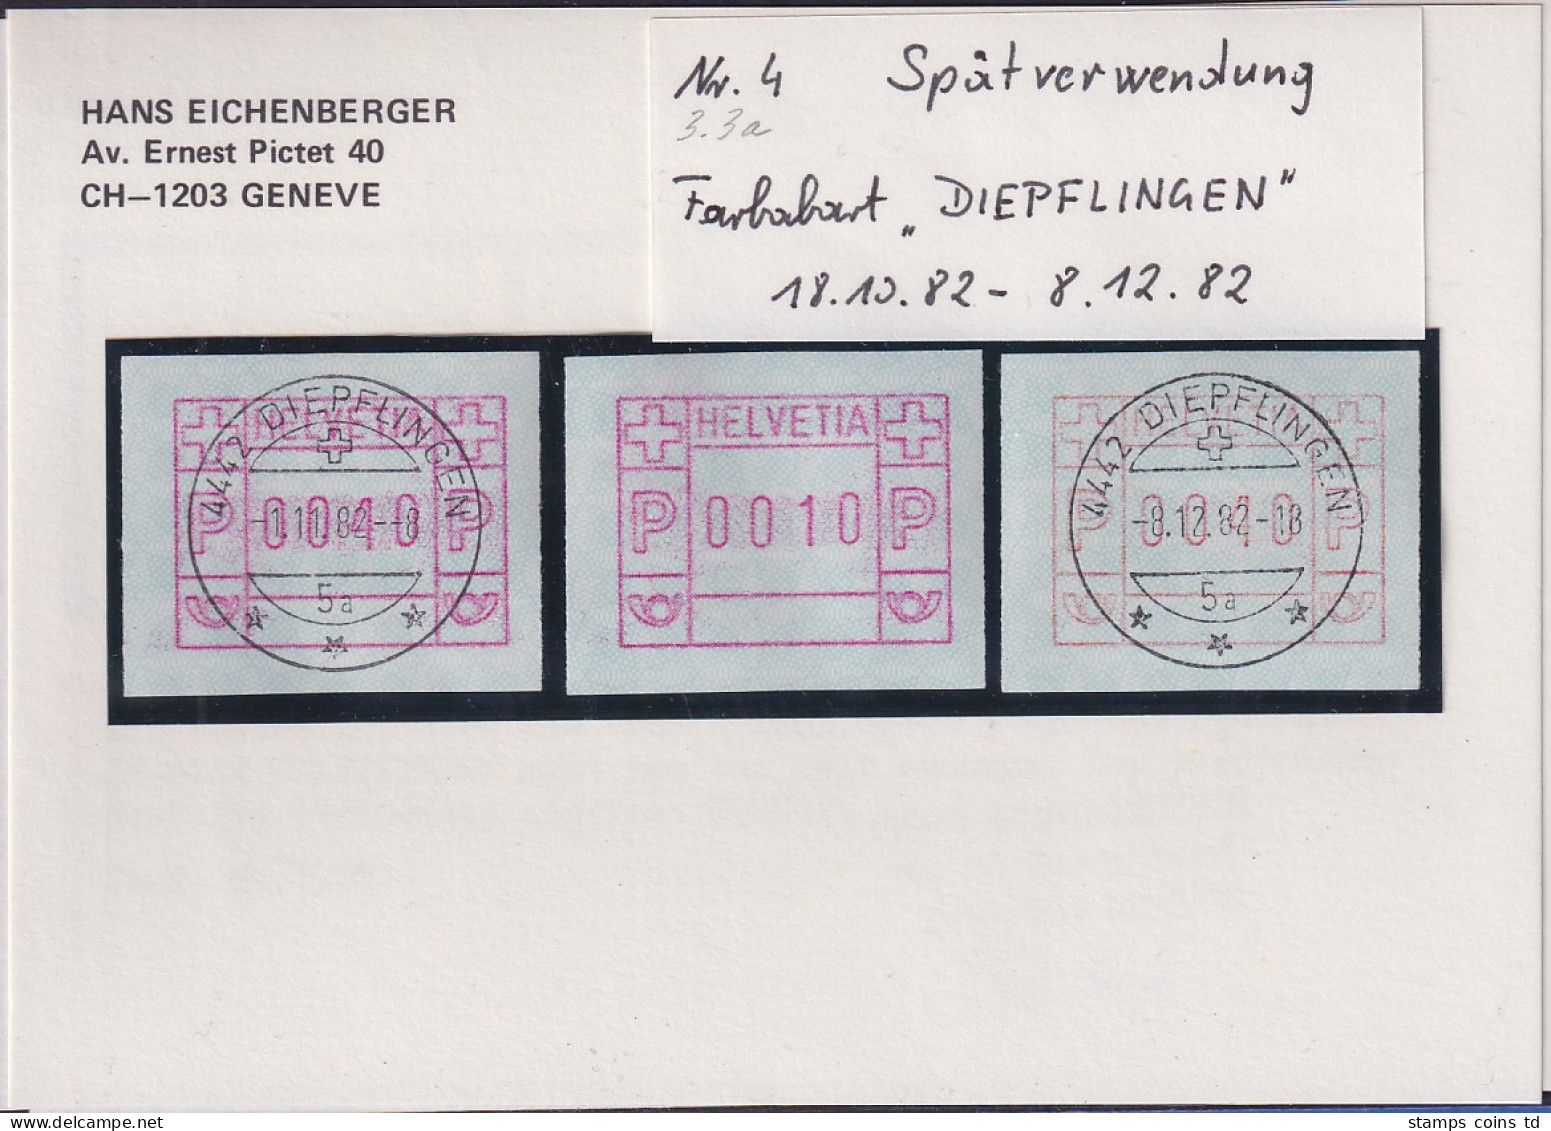 Schweiz FRAMA-ATM Mi-Nr. 3.3a Spätverwendung DIEPFLINGEN 18.10. Bis 8.12. 82  - Automatenmarken